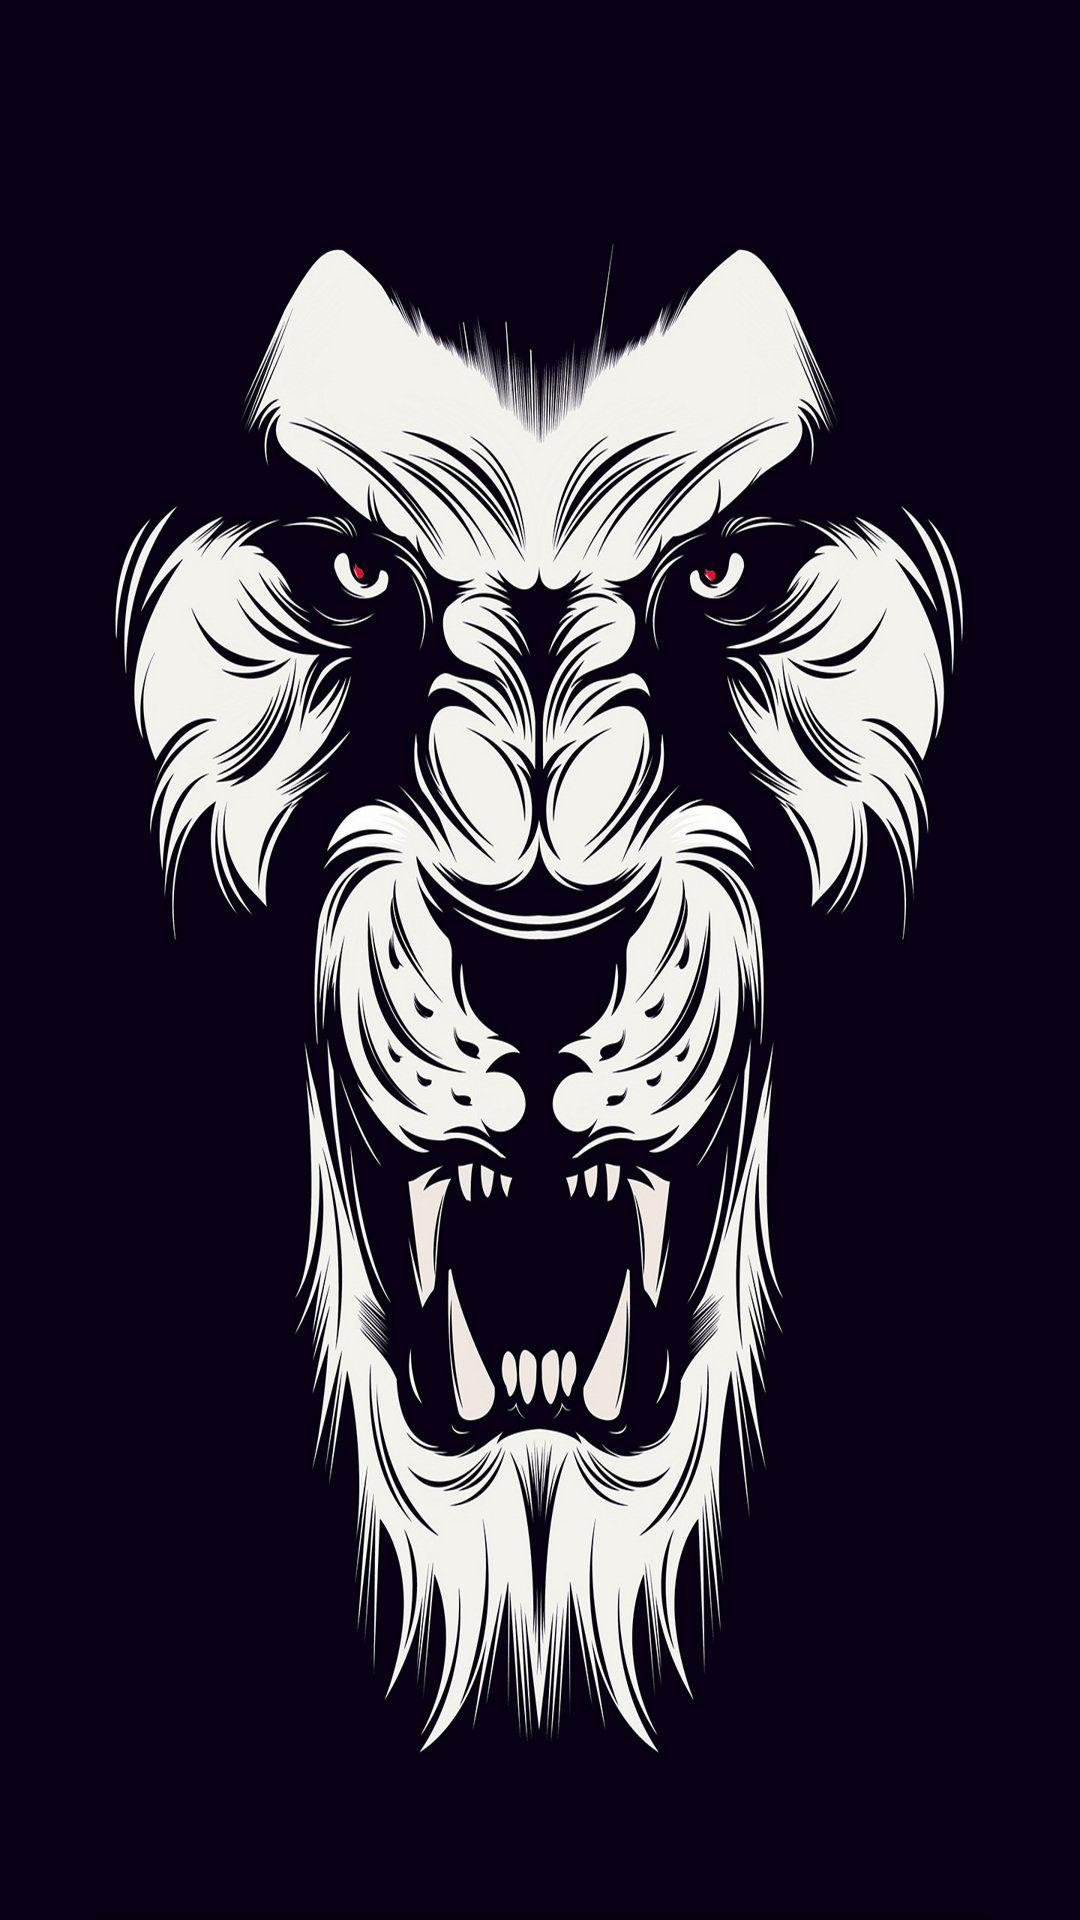 Black Lion Logo - White Lion logo with Black ground - Album on Imgur